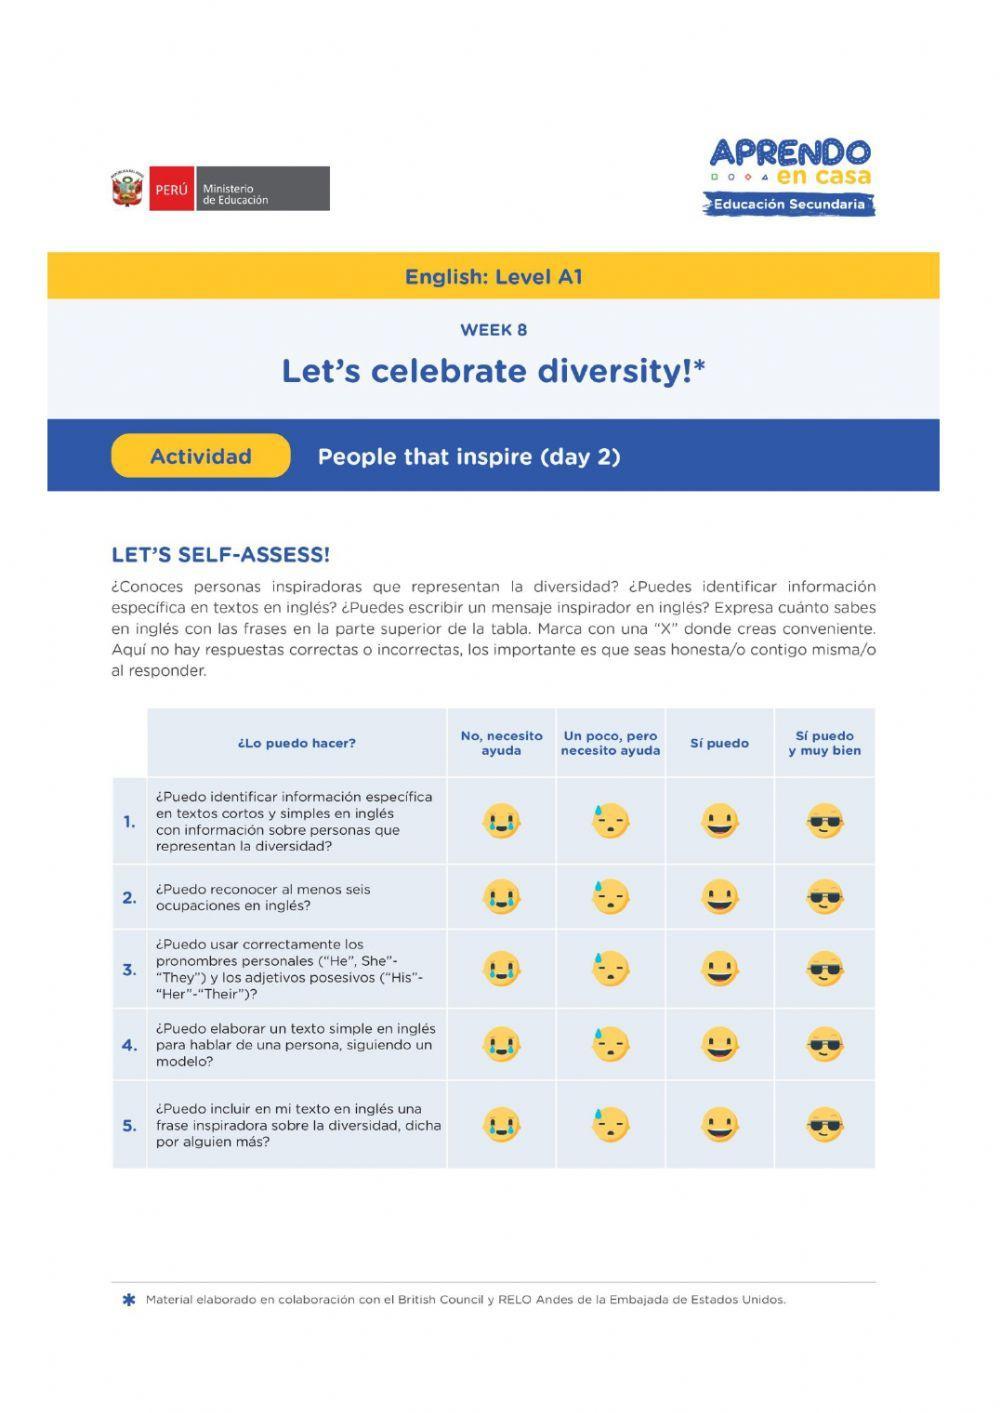 Let's Celebrate Diversity!